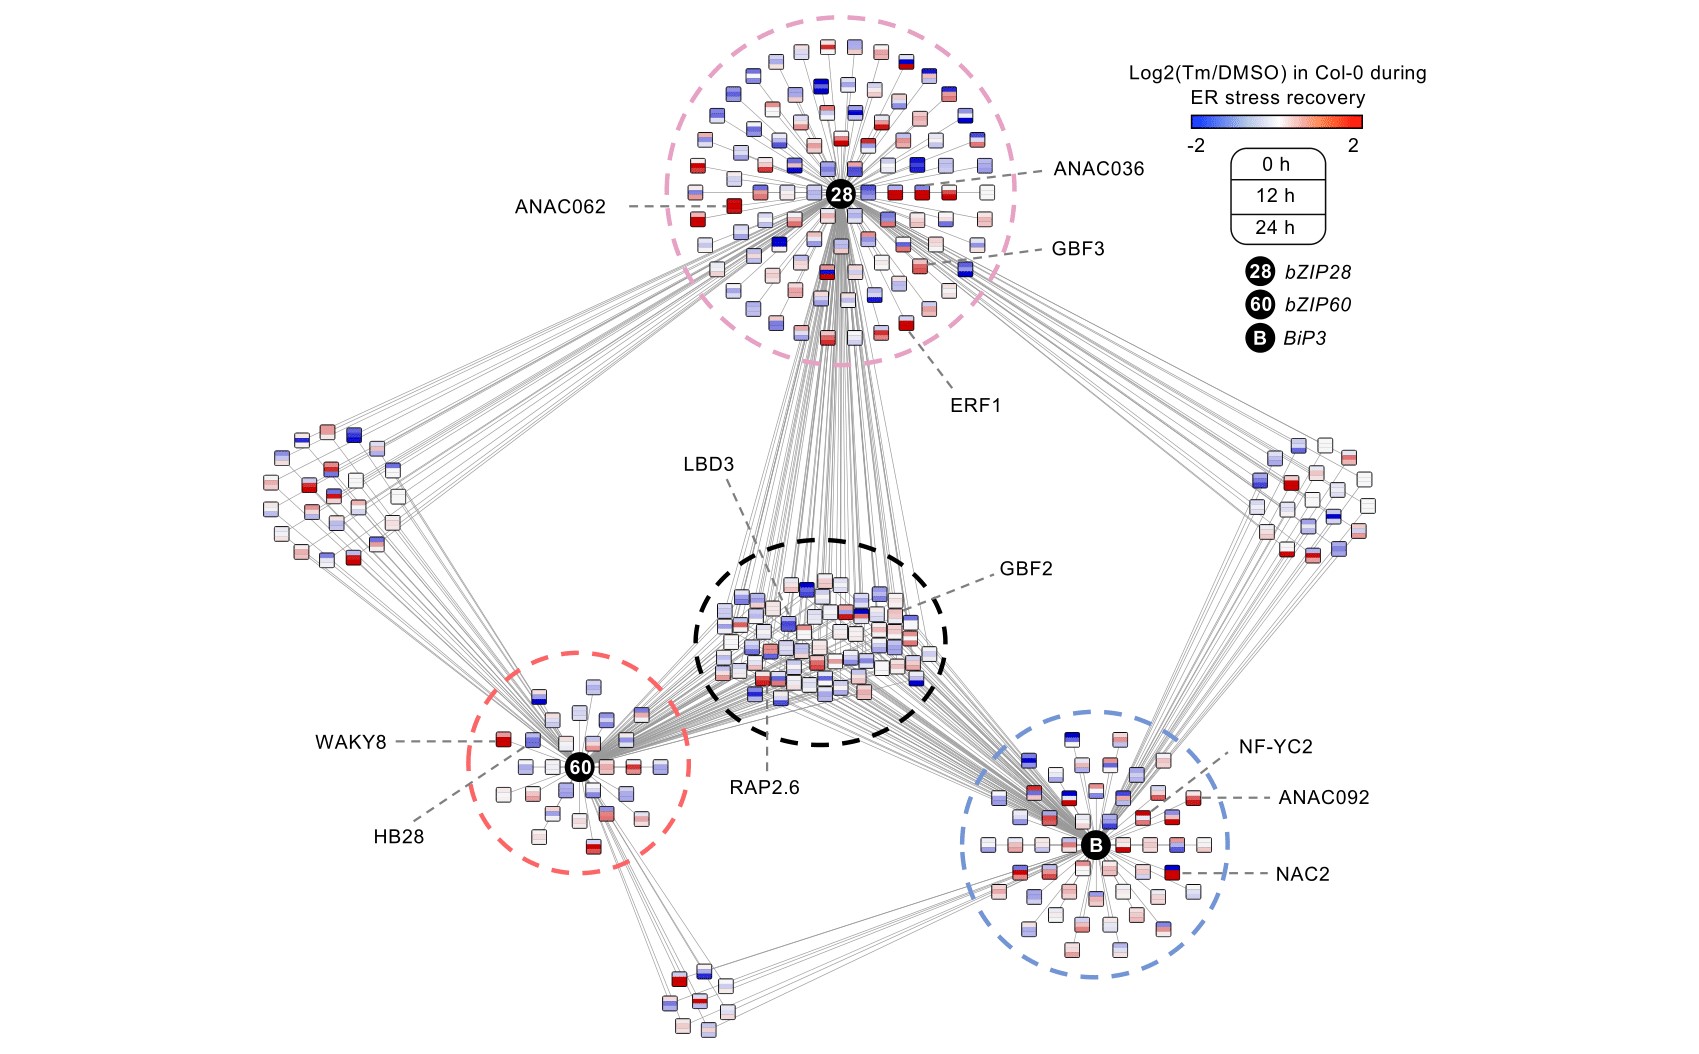 A gene regulatory network underlying ER stress responses